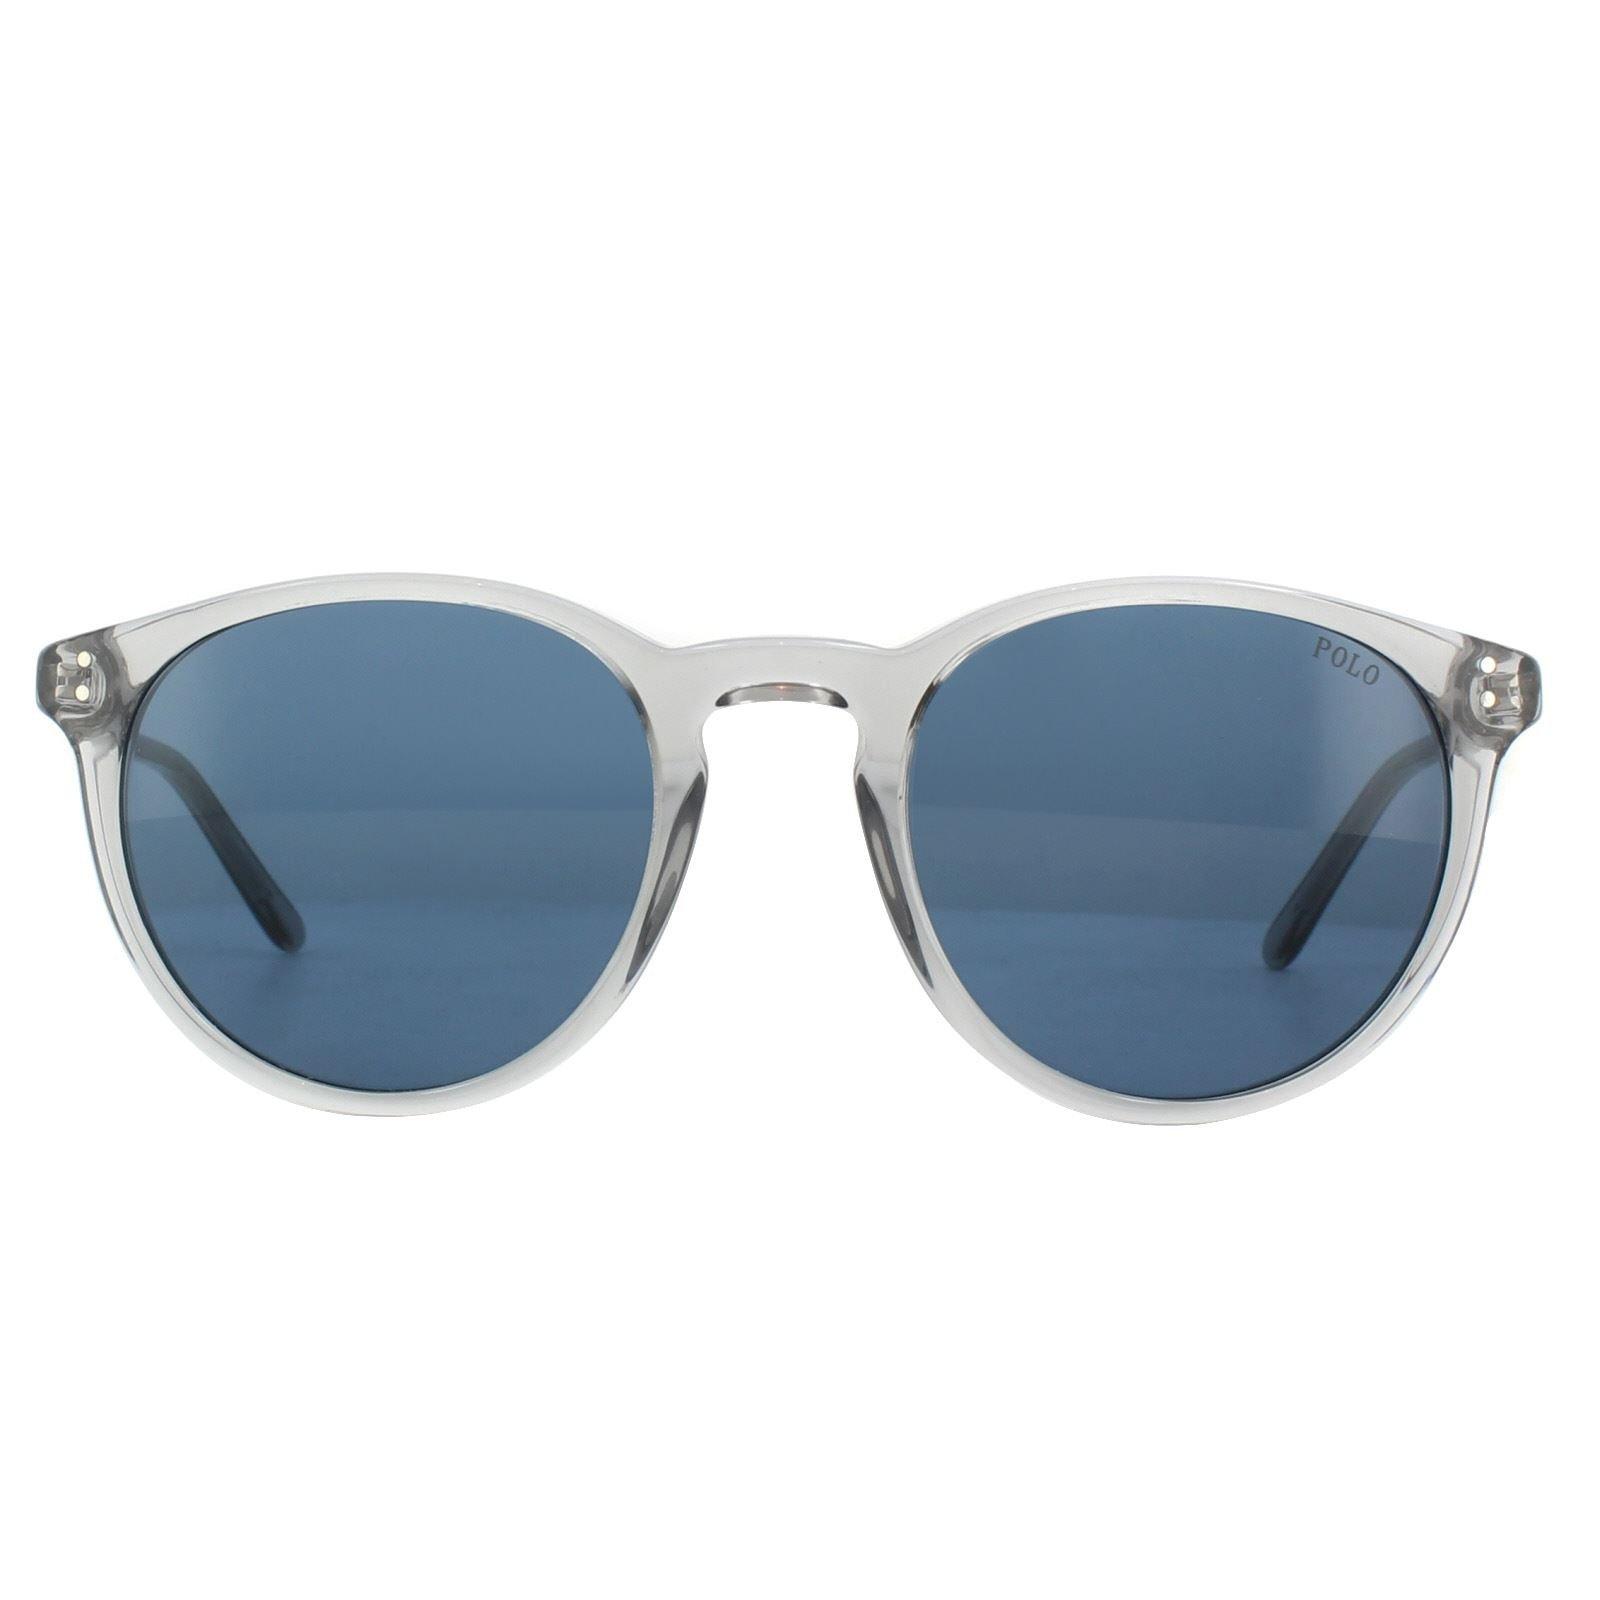 Round Shiny Transparent Grey Dark Blue Sunglasses